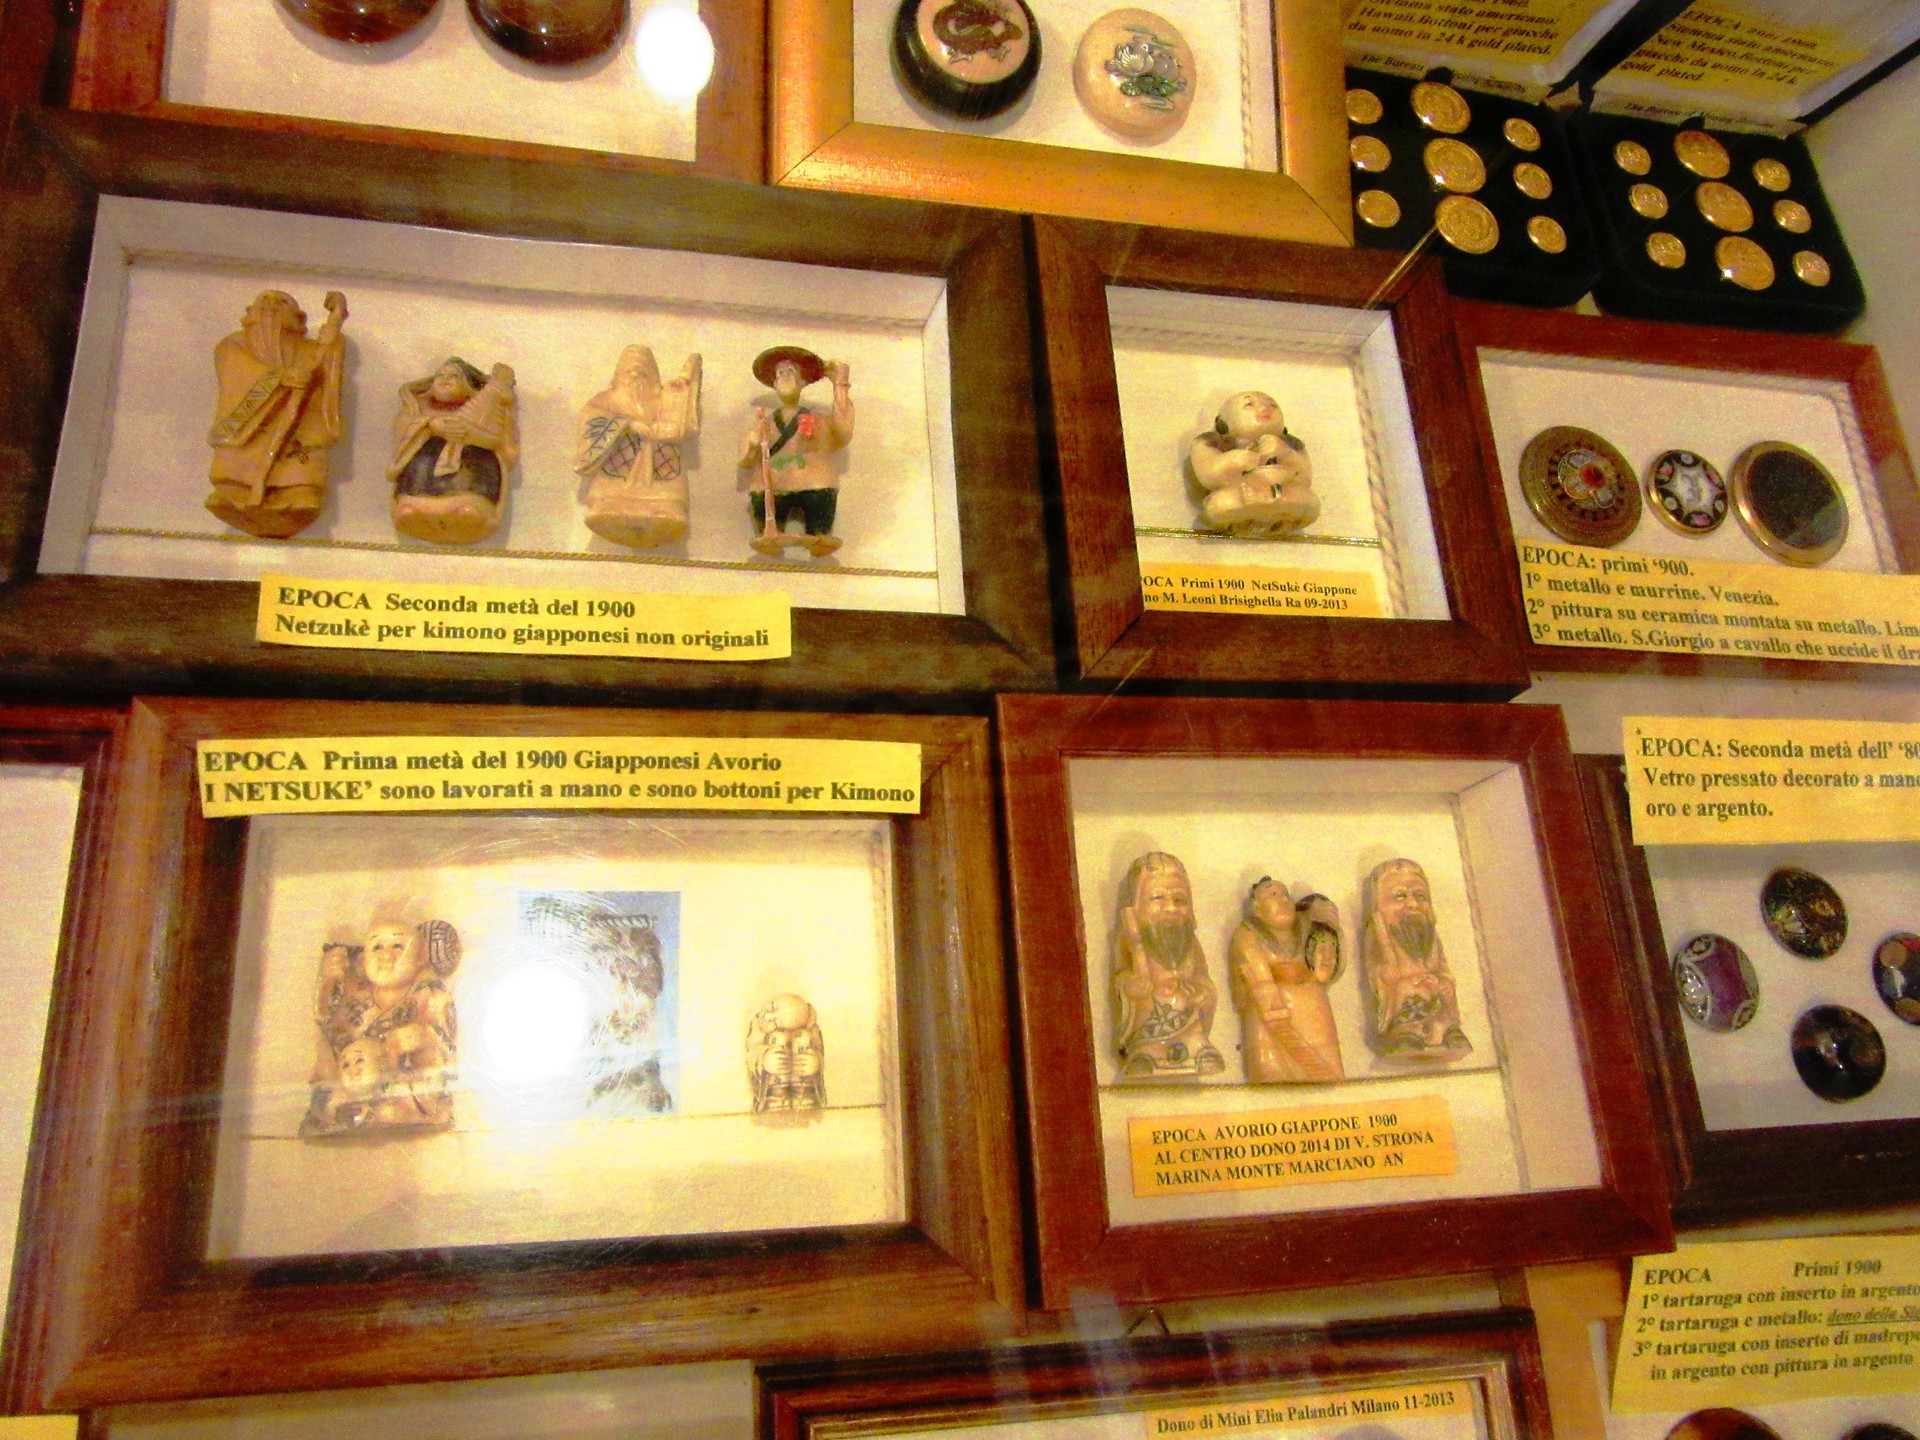 museo-botones-santarcangelo-97357de455705407d334d06b7c619276.jpg